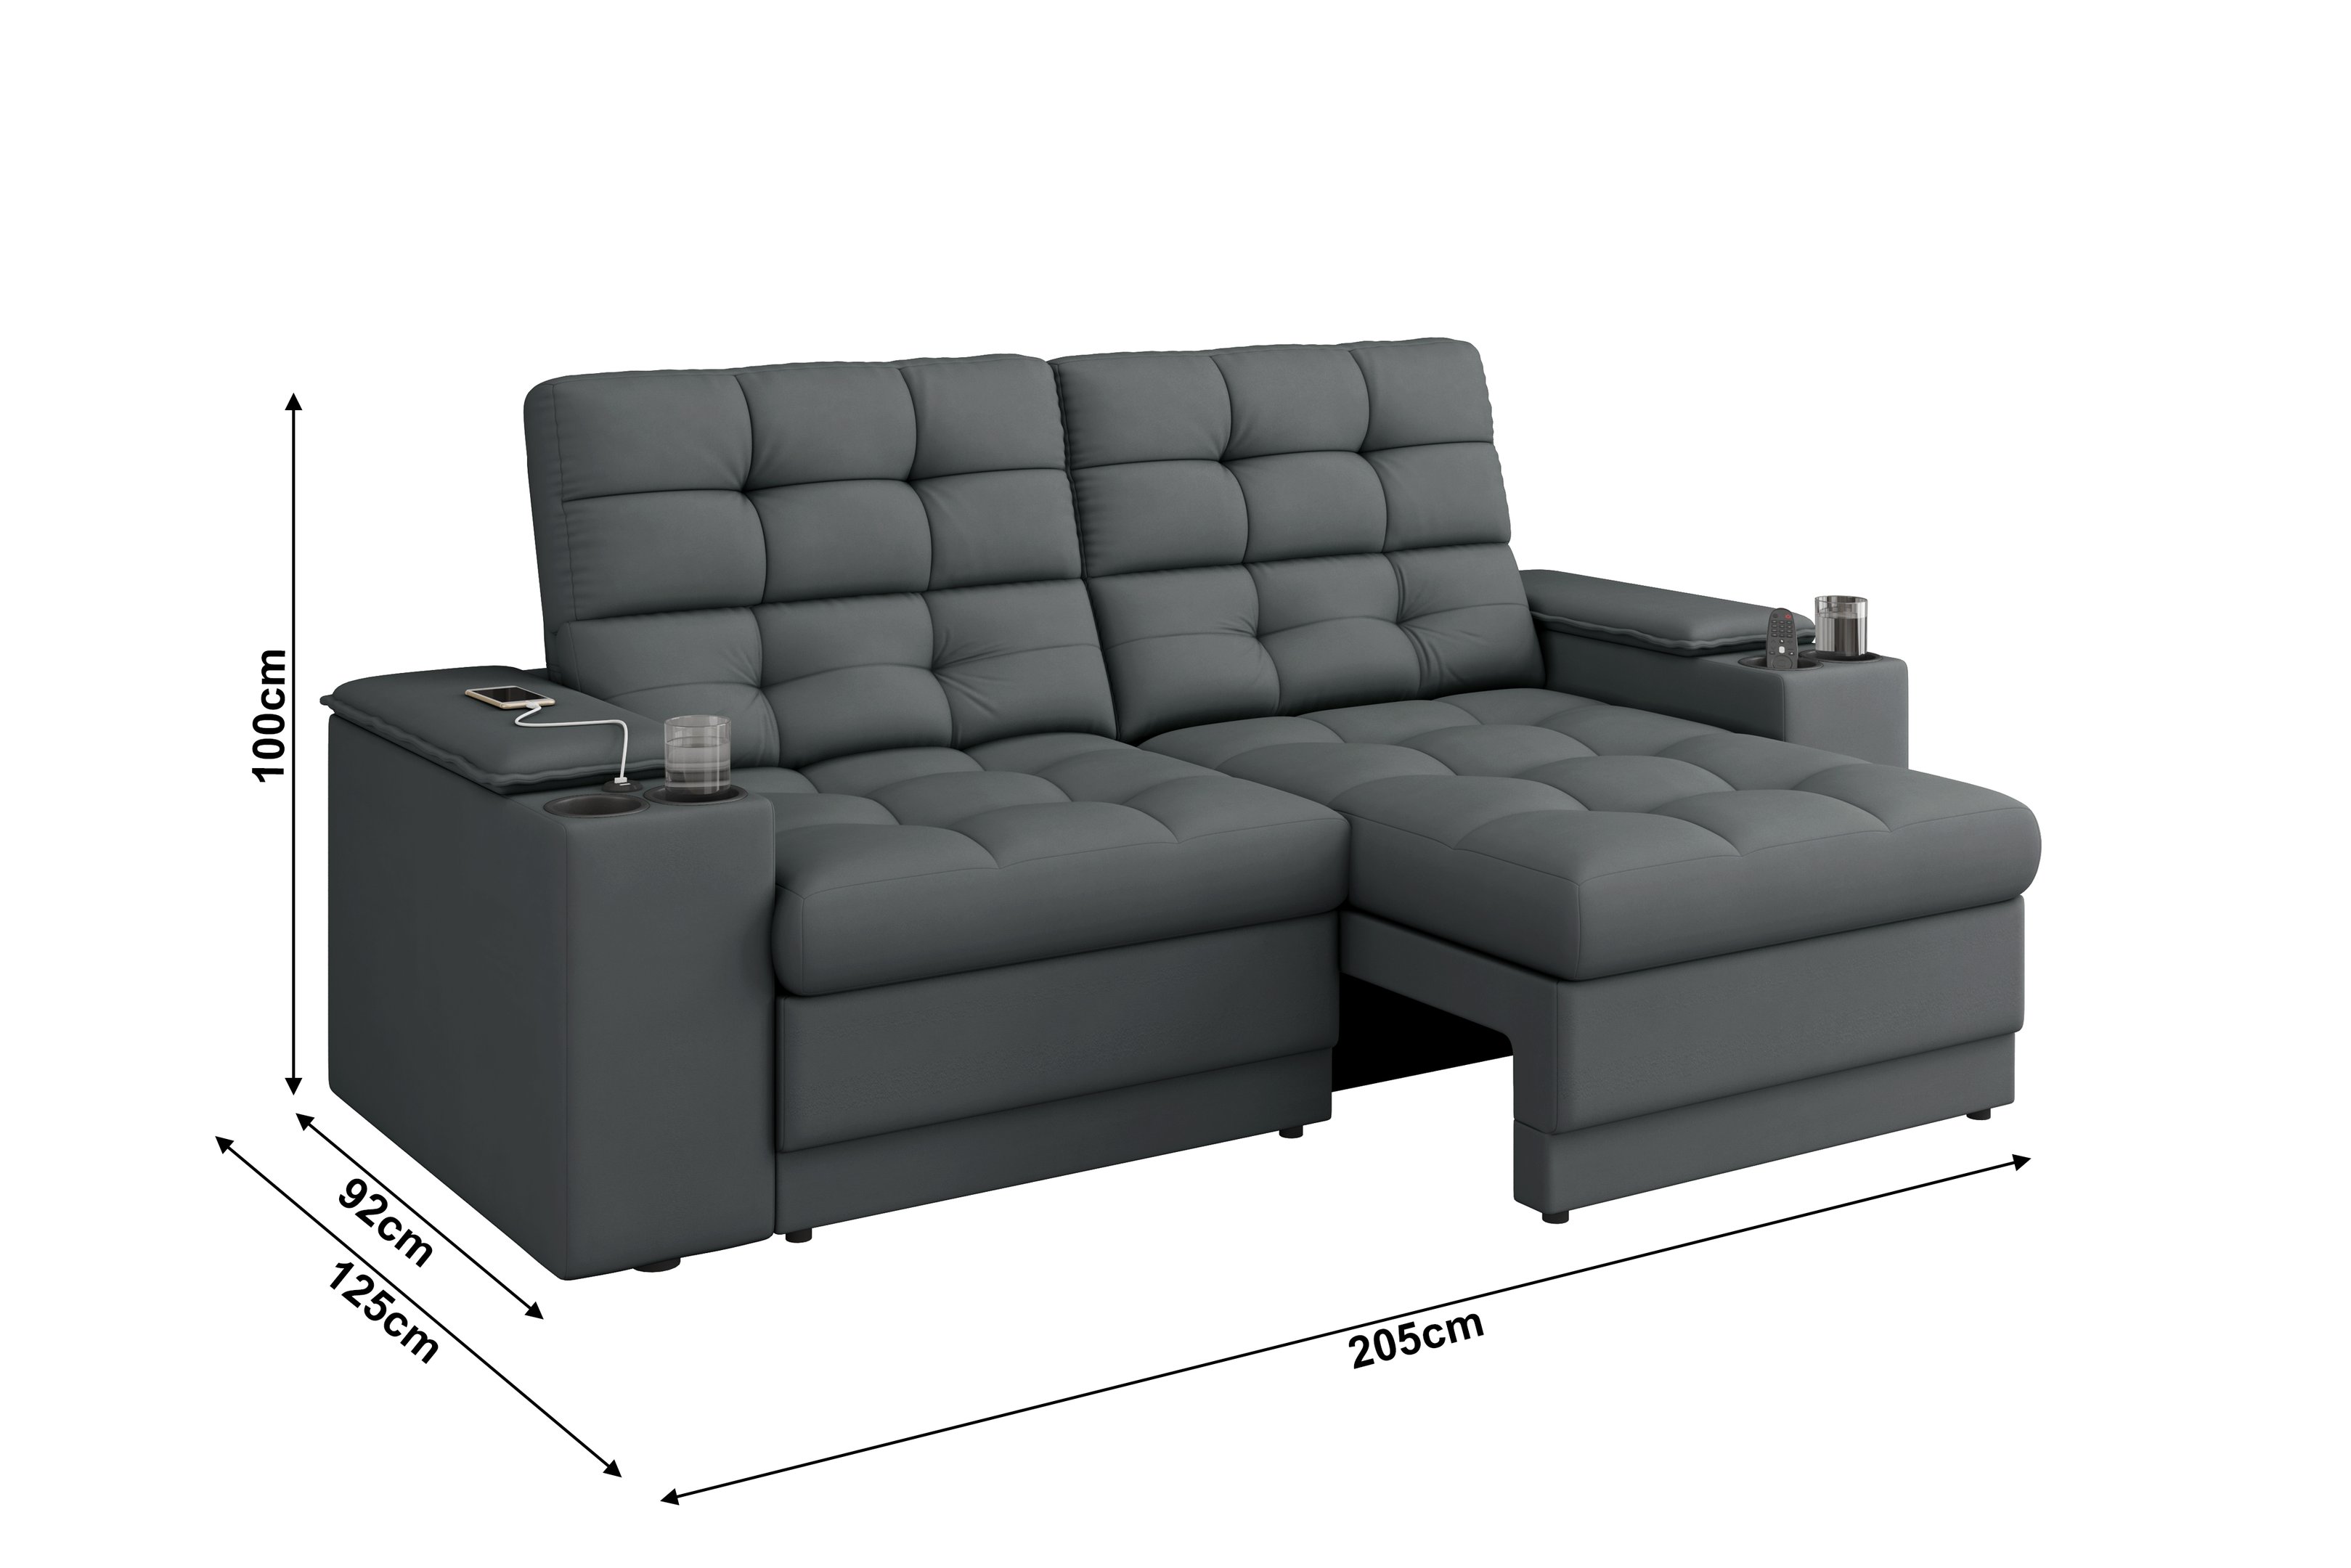 Sofá Confort Premium 2,05m Assento Retrátil/reclinável Porta Copos e Usb Suede Cinza - Xflex - 2